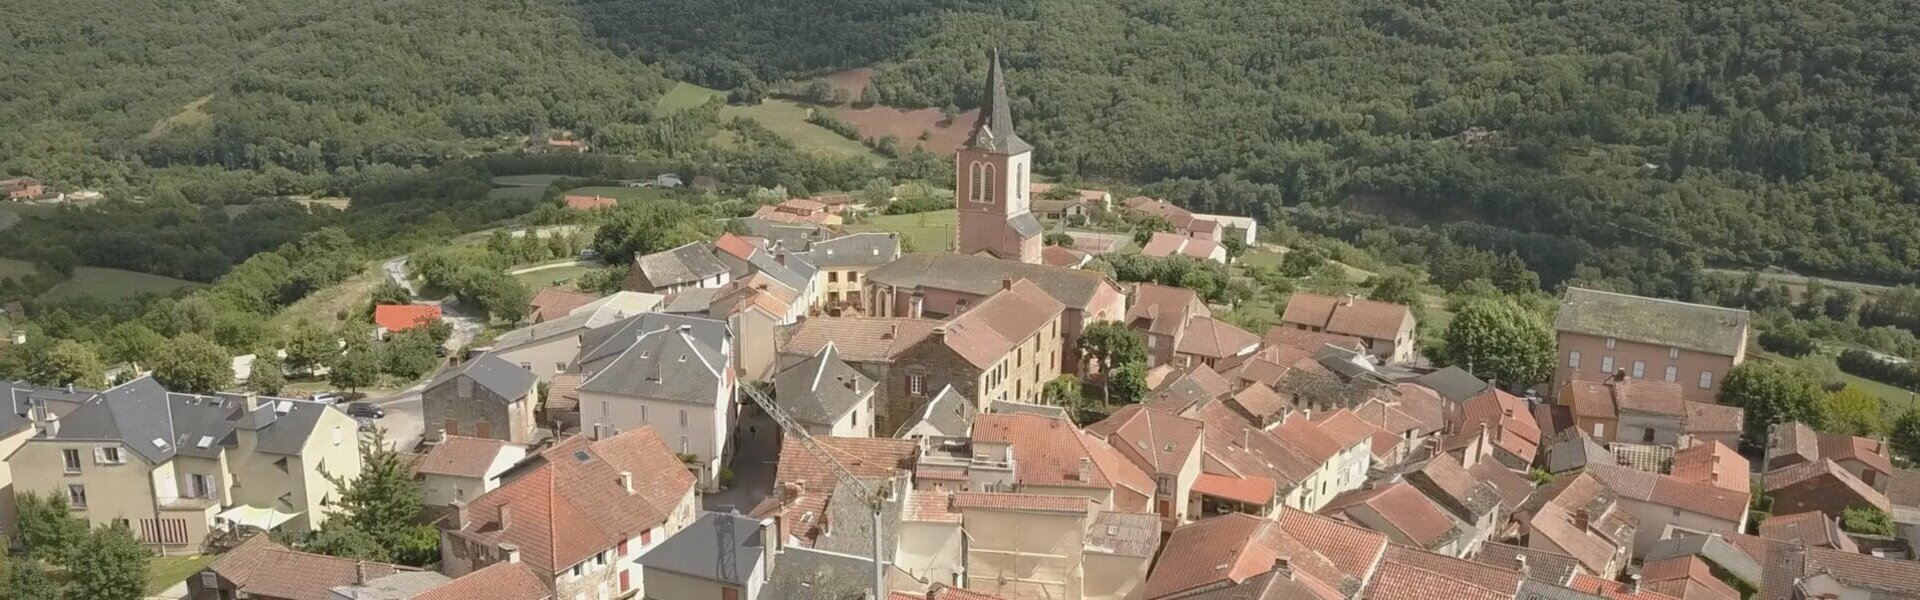 Comptes-rendus du Conseil Commune de Broquies Aveyron